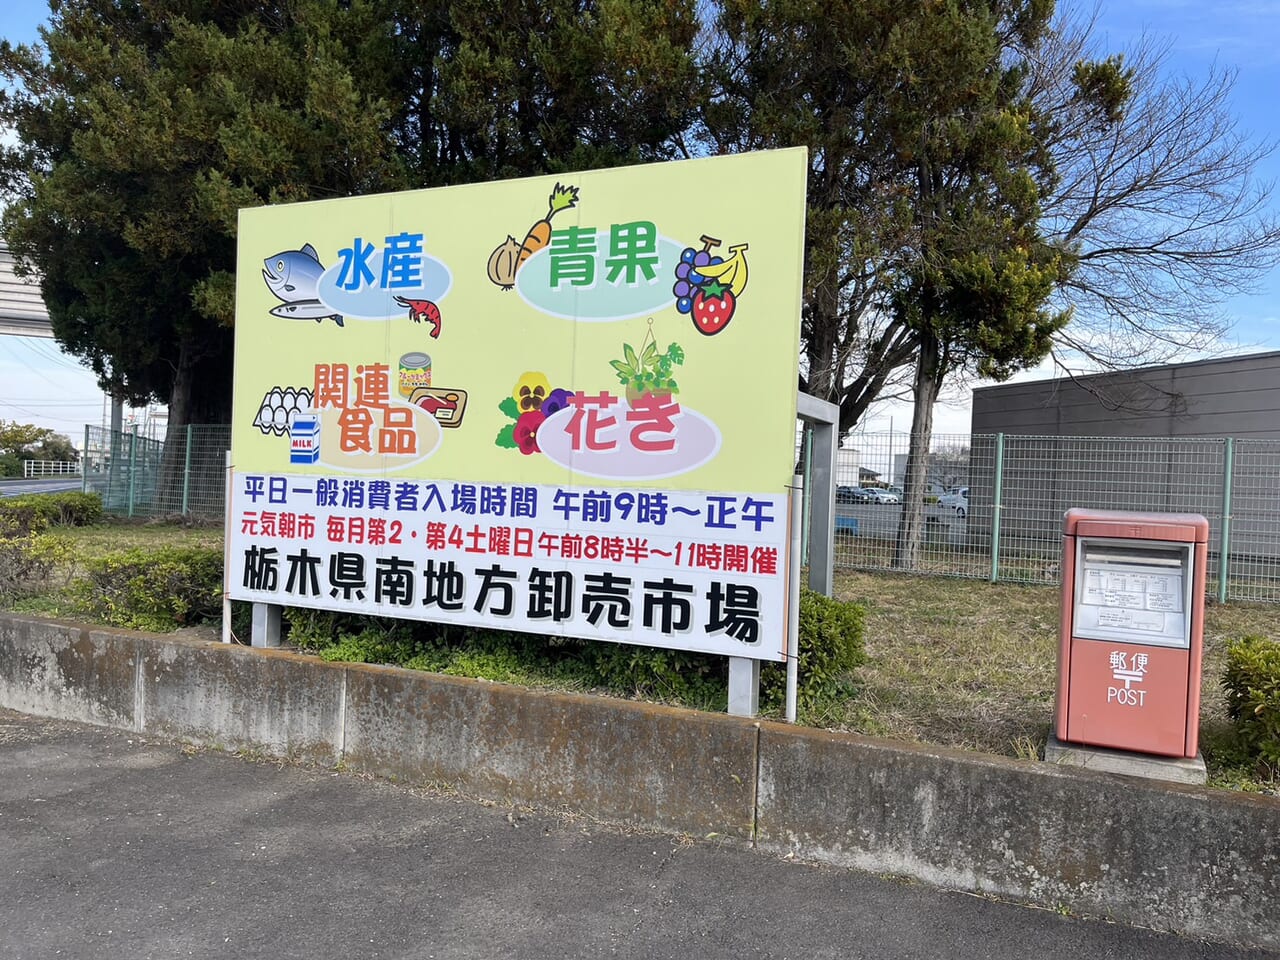 栃木県南卸売市場に建てられた元気朝市の看板。